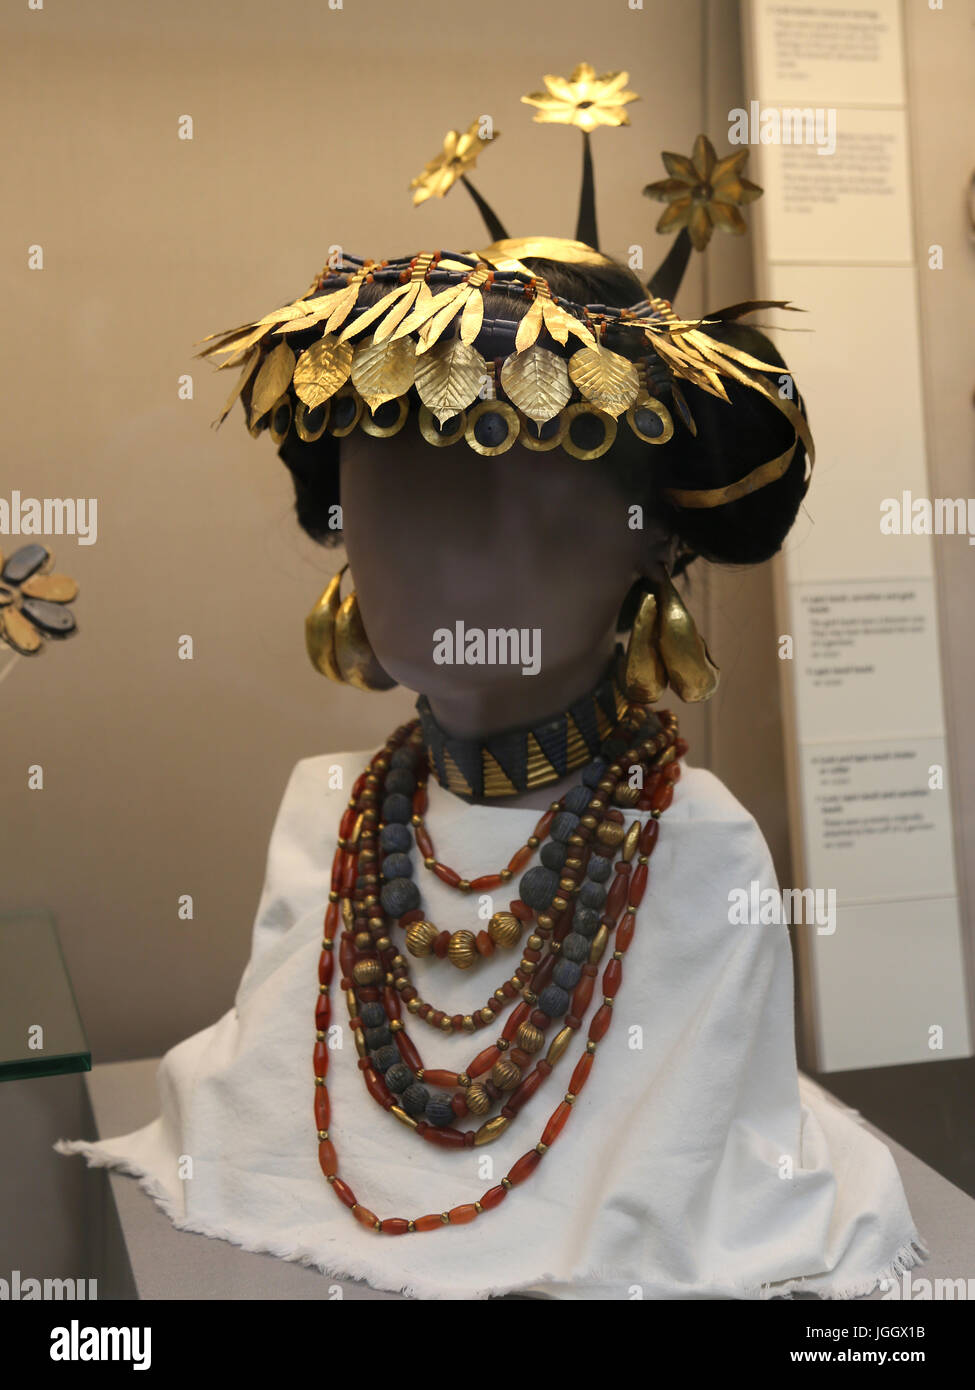 L'Iraq. Roya. cimitero. Ur. Early Dynastic III. Nastro color oro da una testa-vestito. Femmina. 2600 BC. British Museum. Londra. Foto Stock